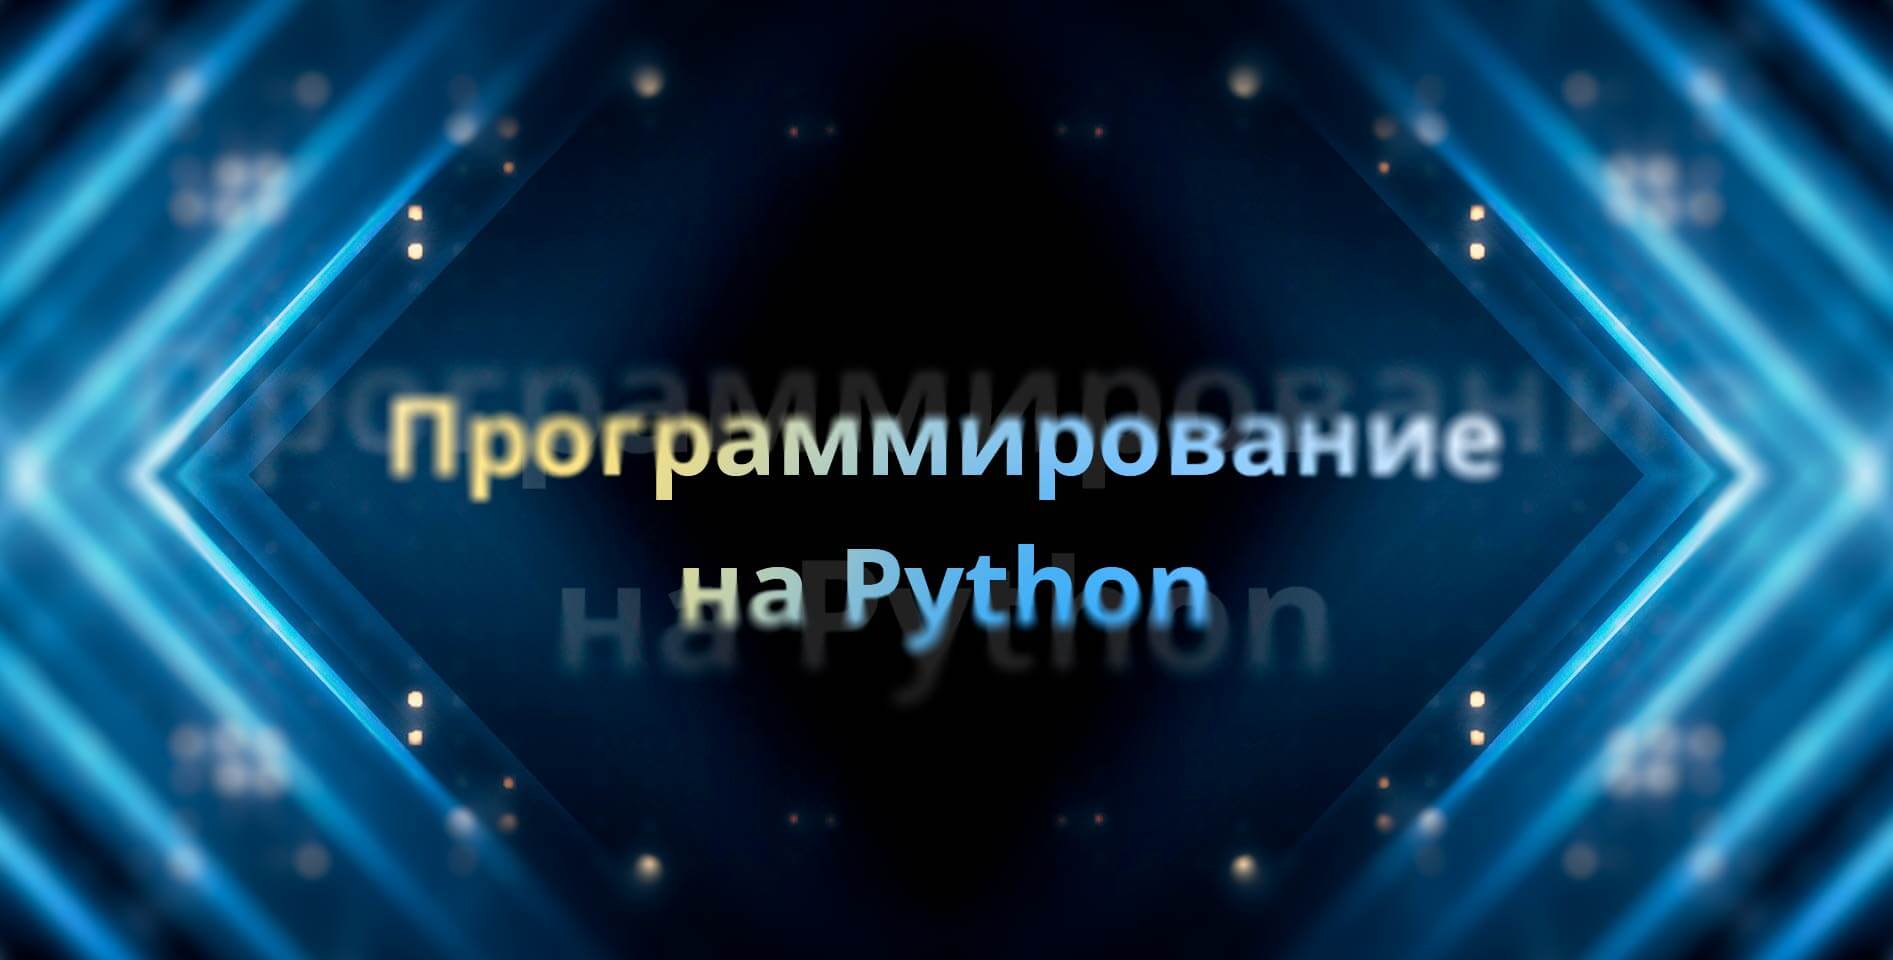 Stepik — Программирование на Python